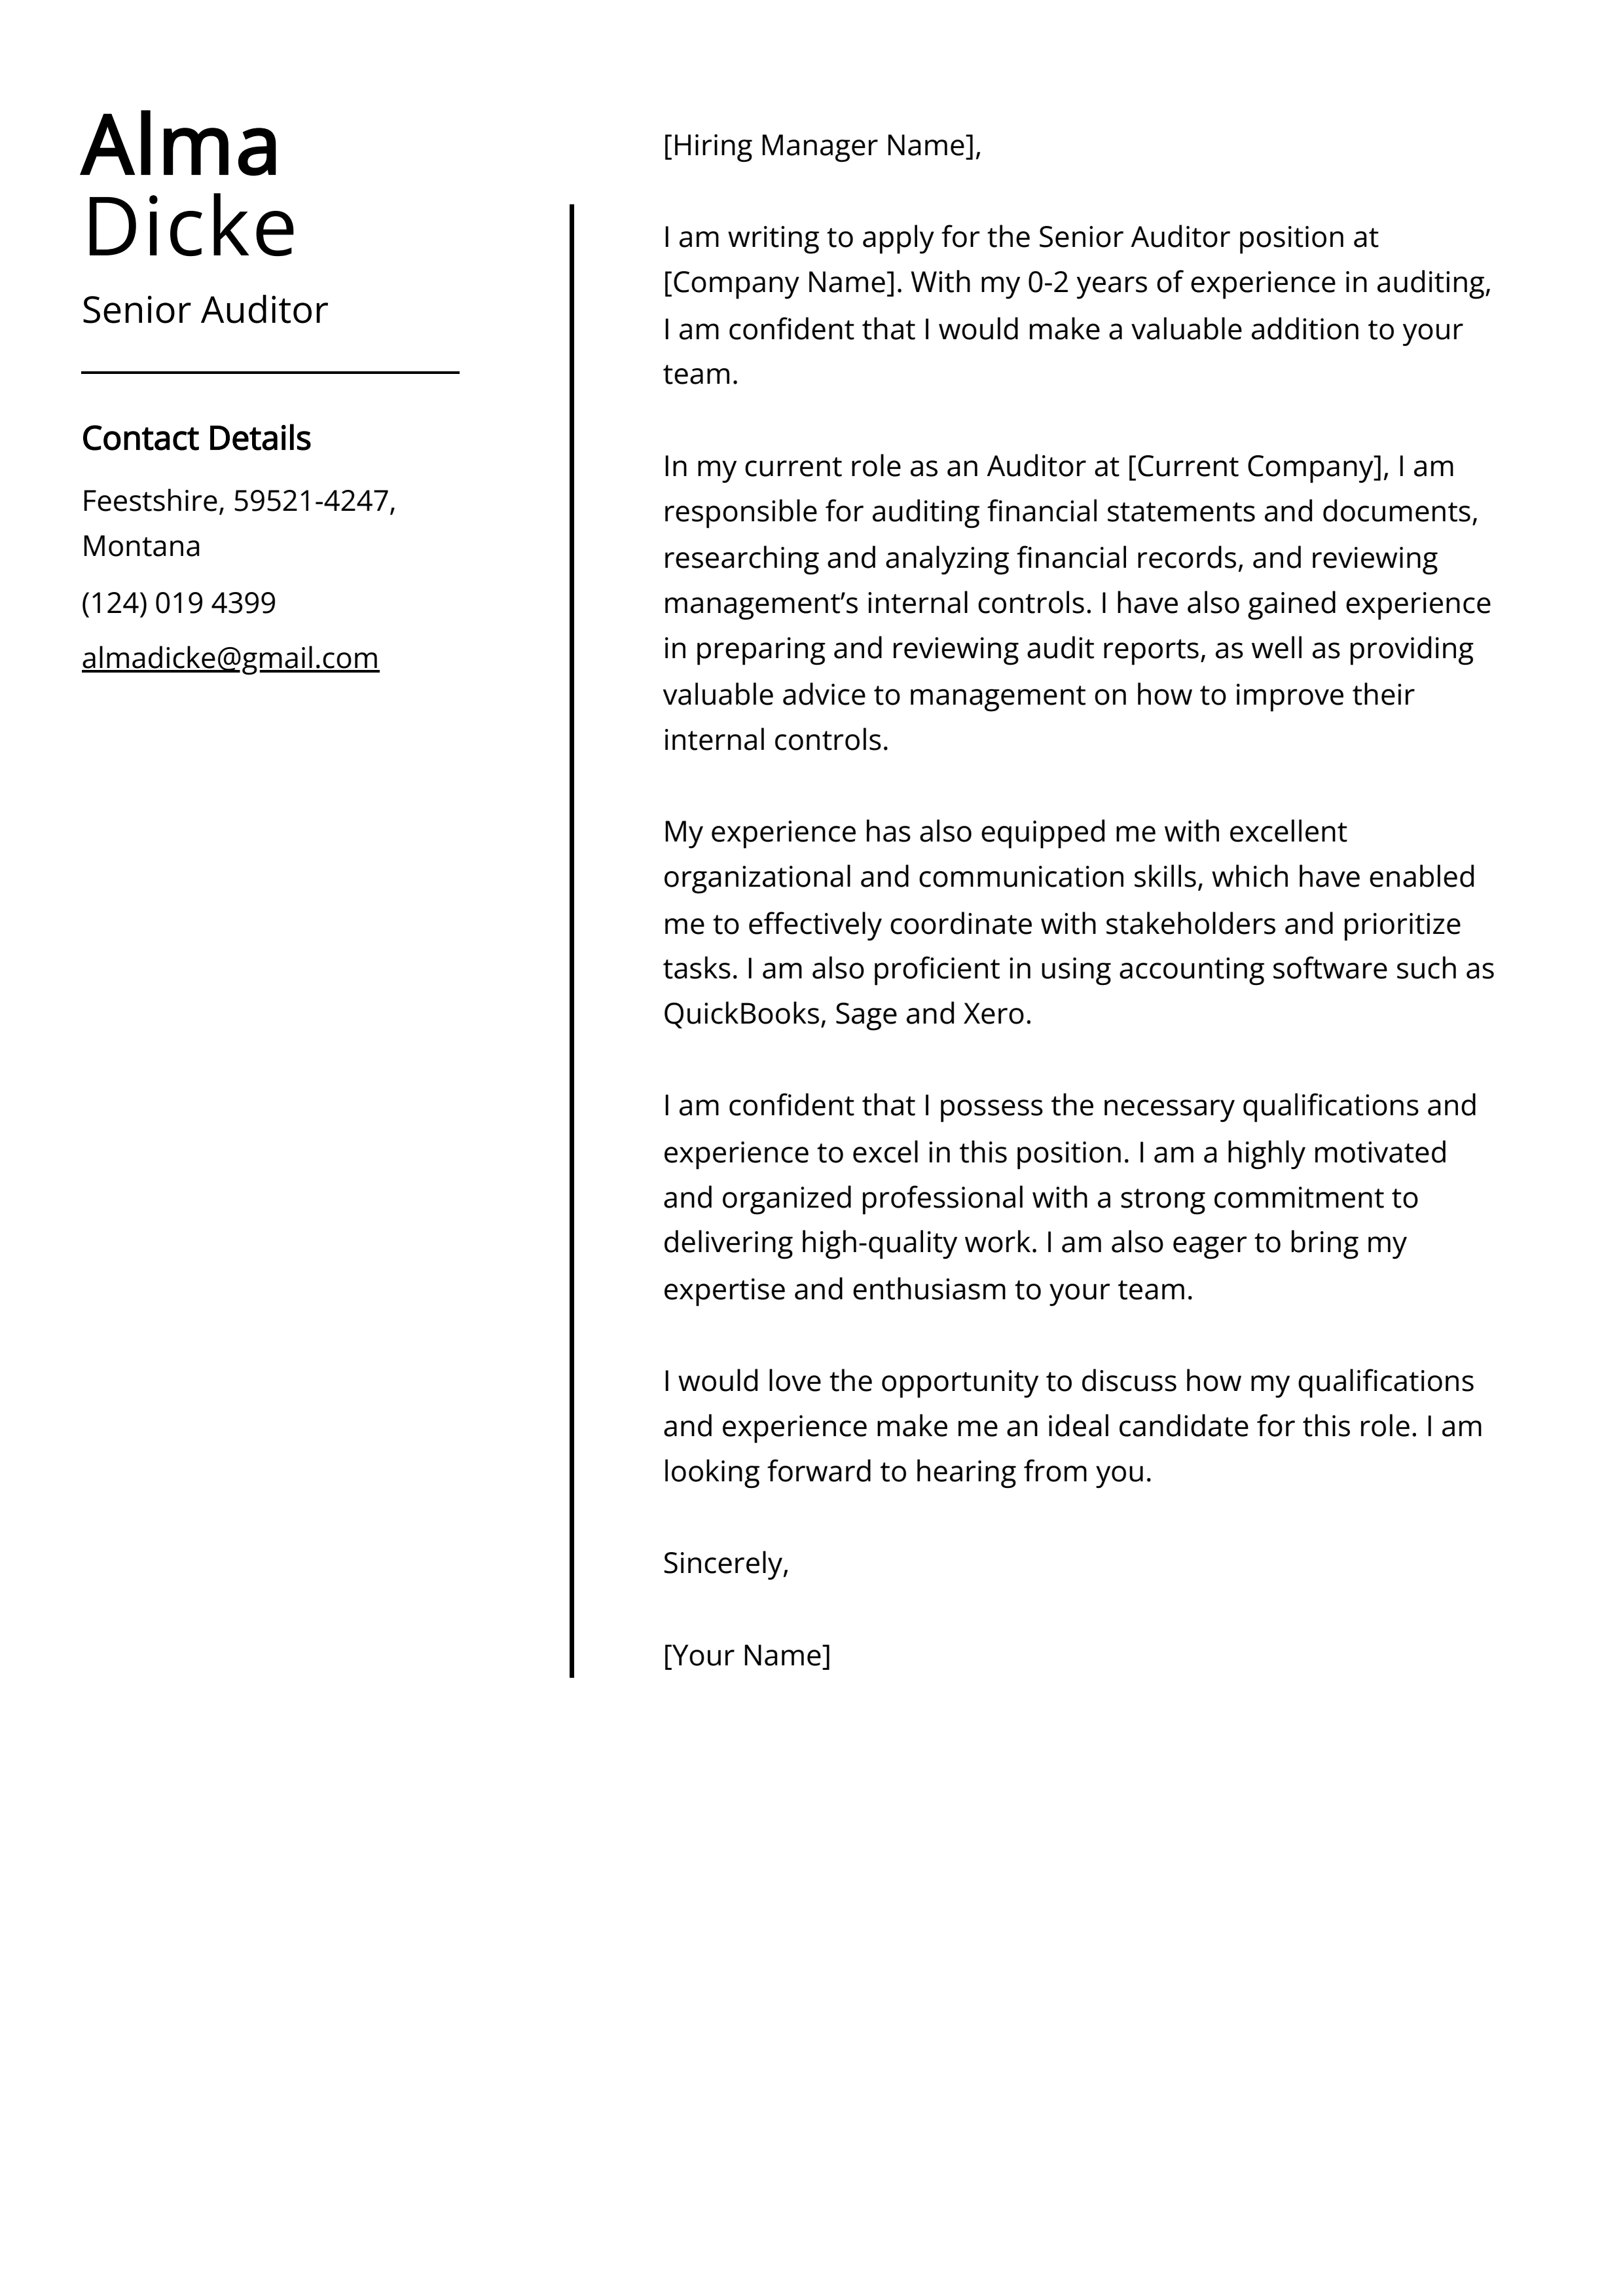 Senior Auditor Cover Letter Example